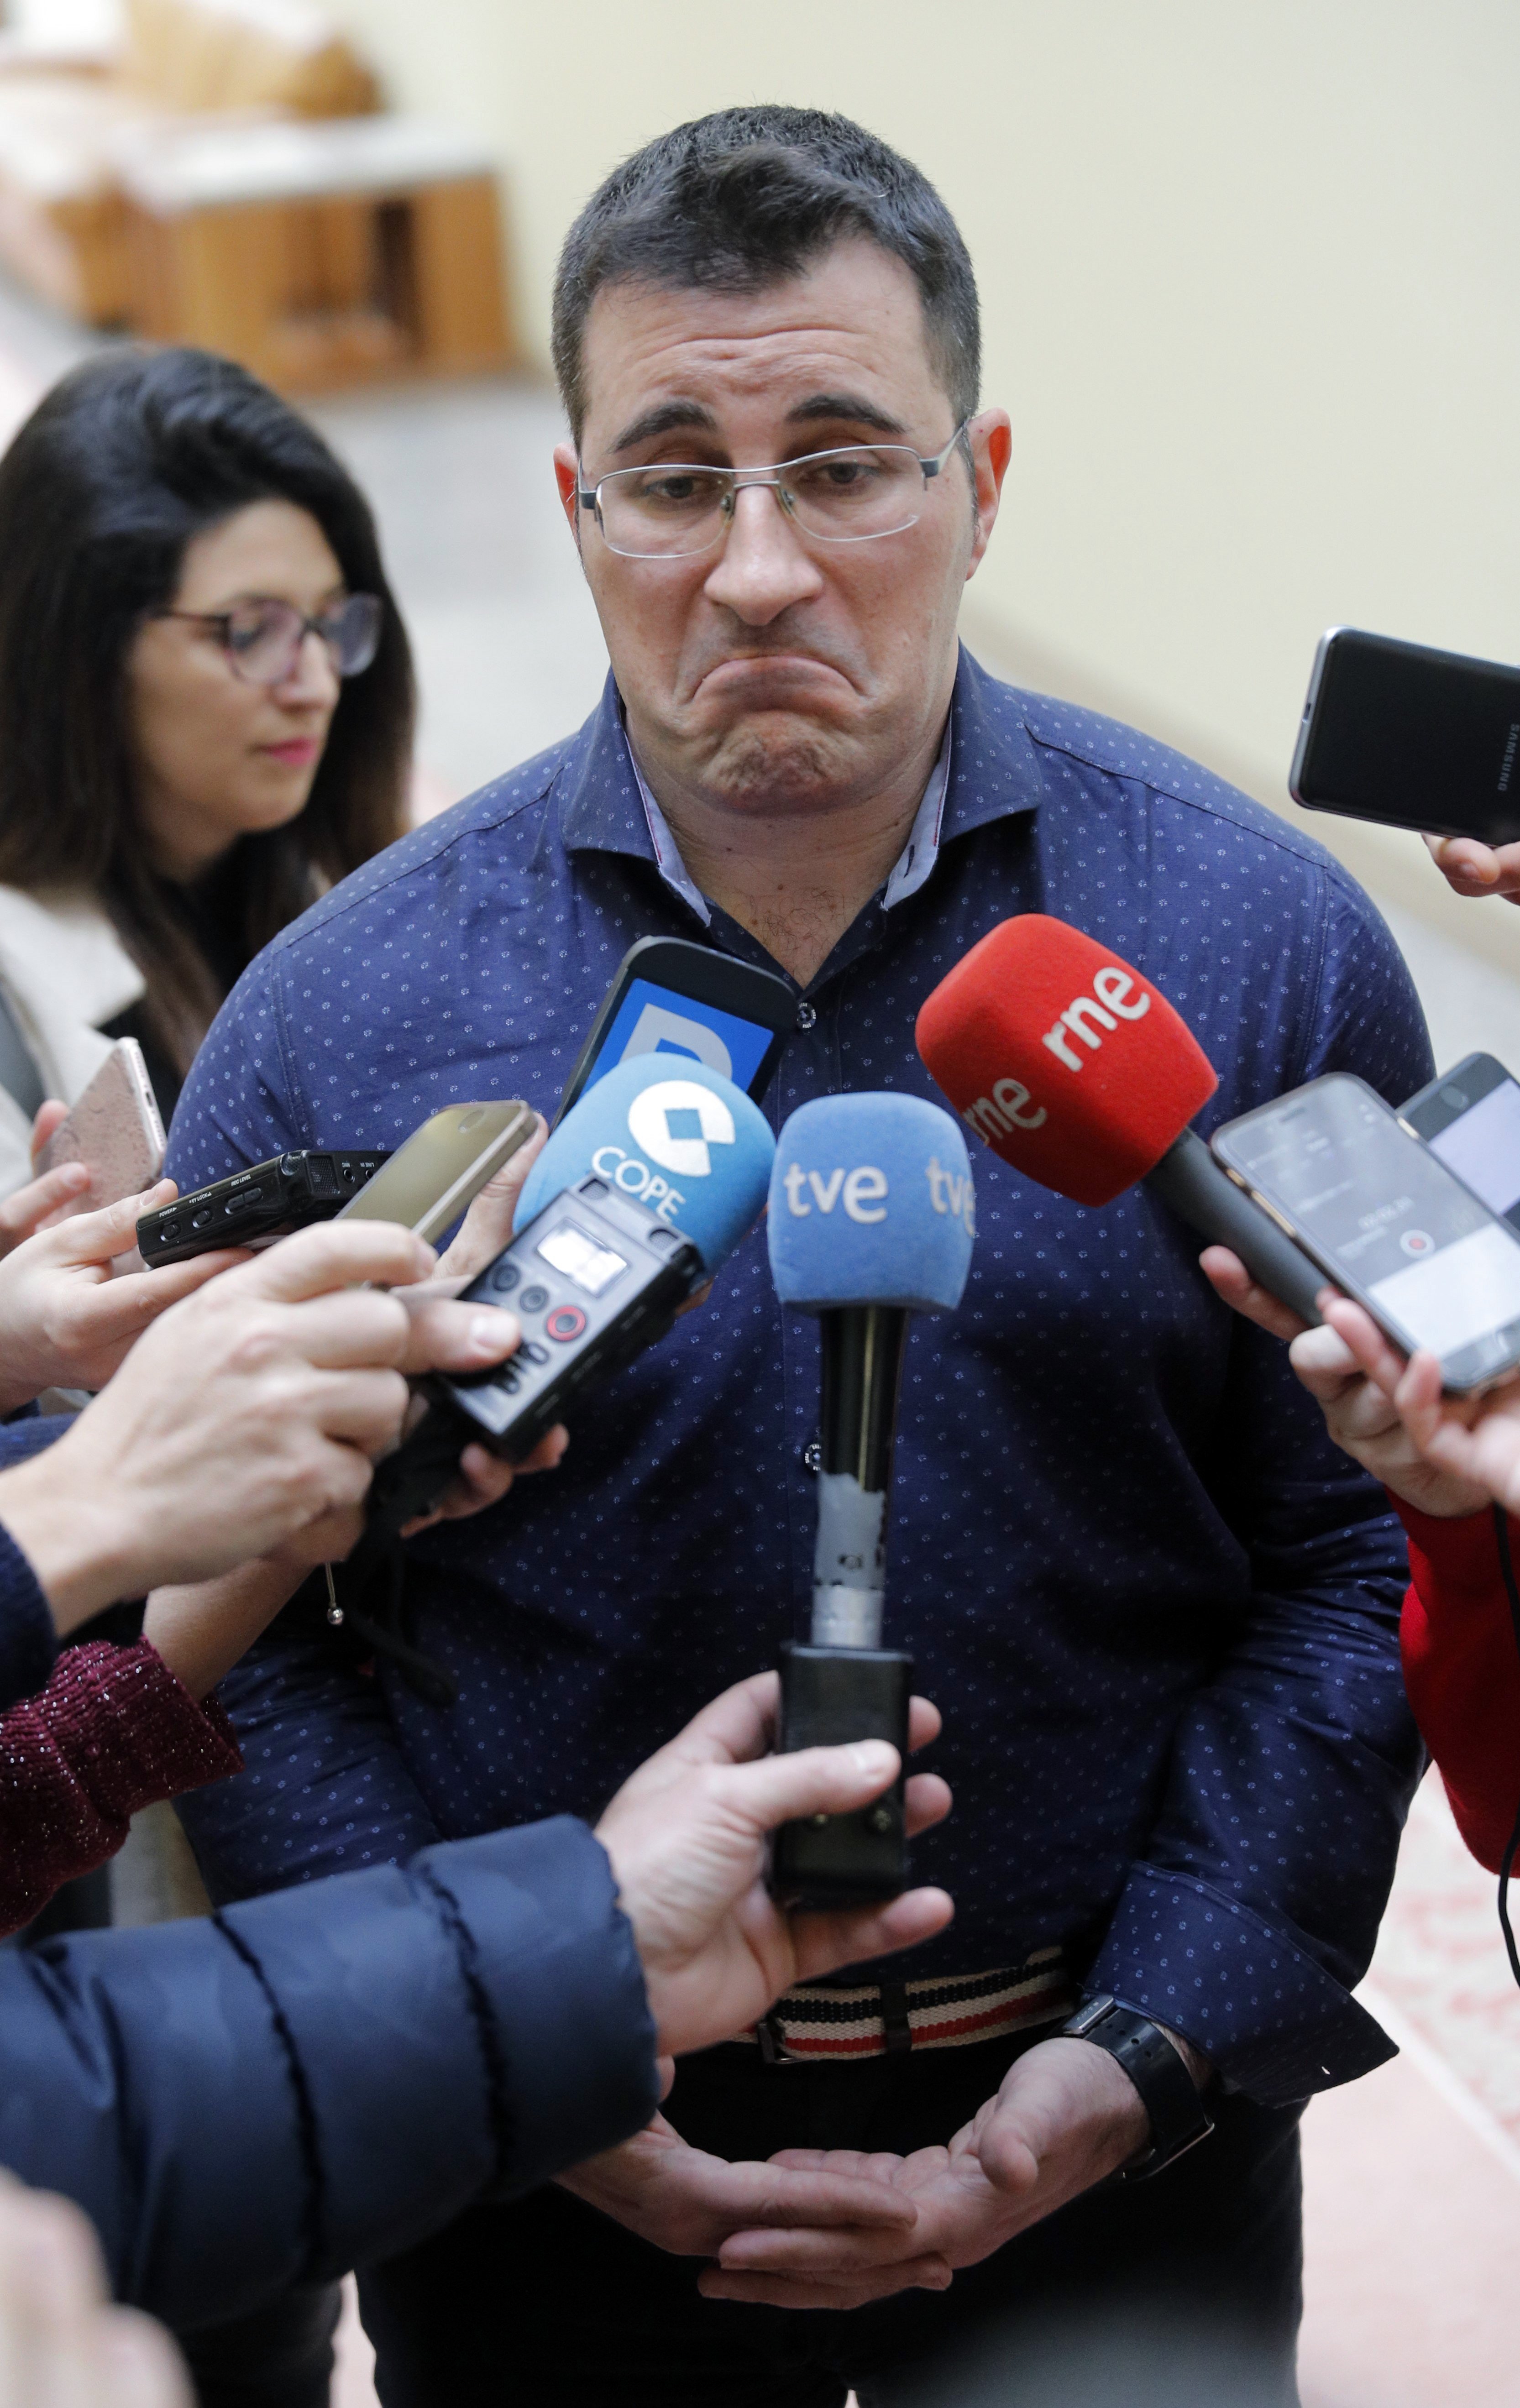 Dimiteix un diputat gallec de Podemos per inflar el currículum